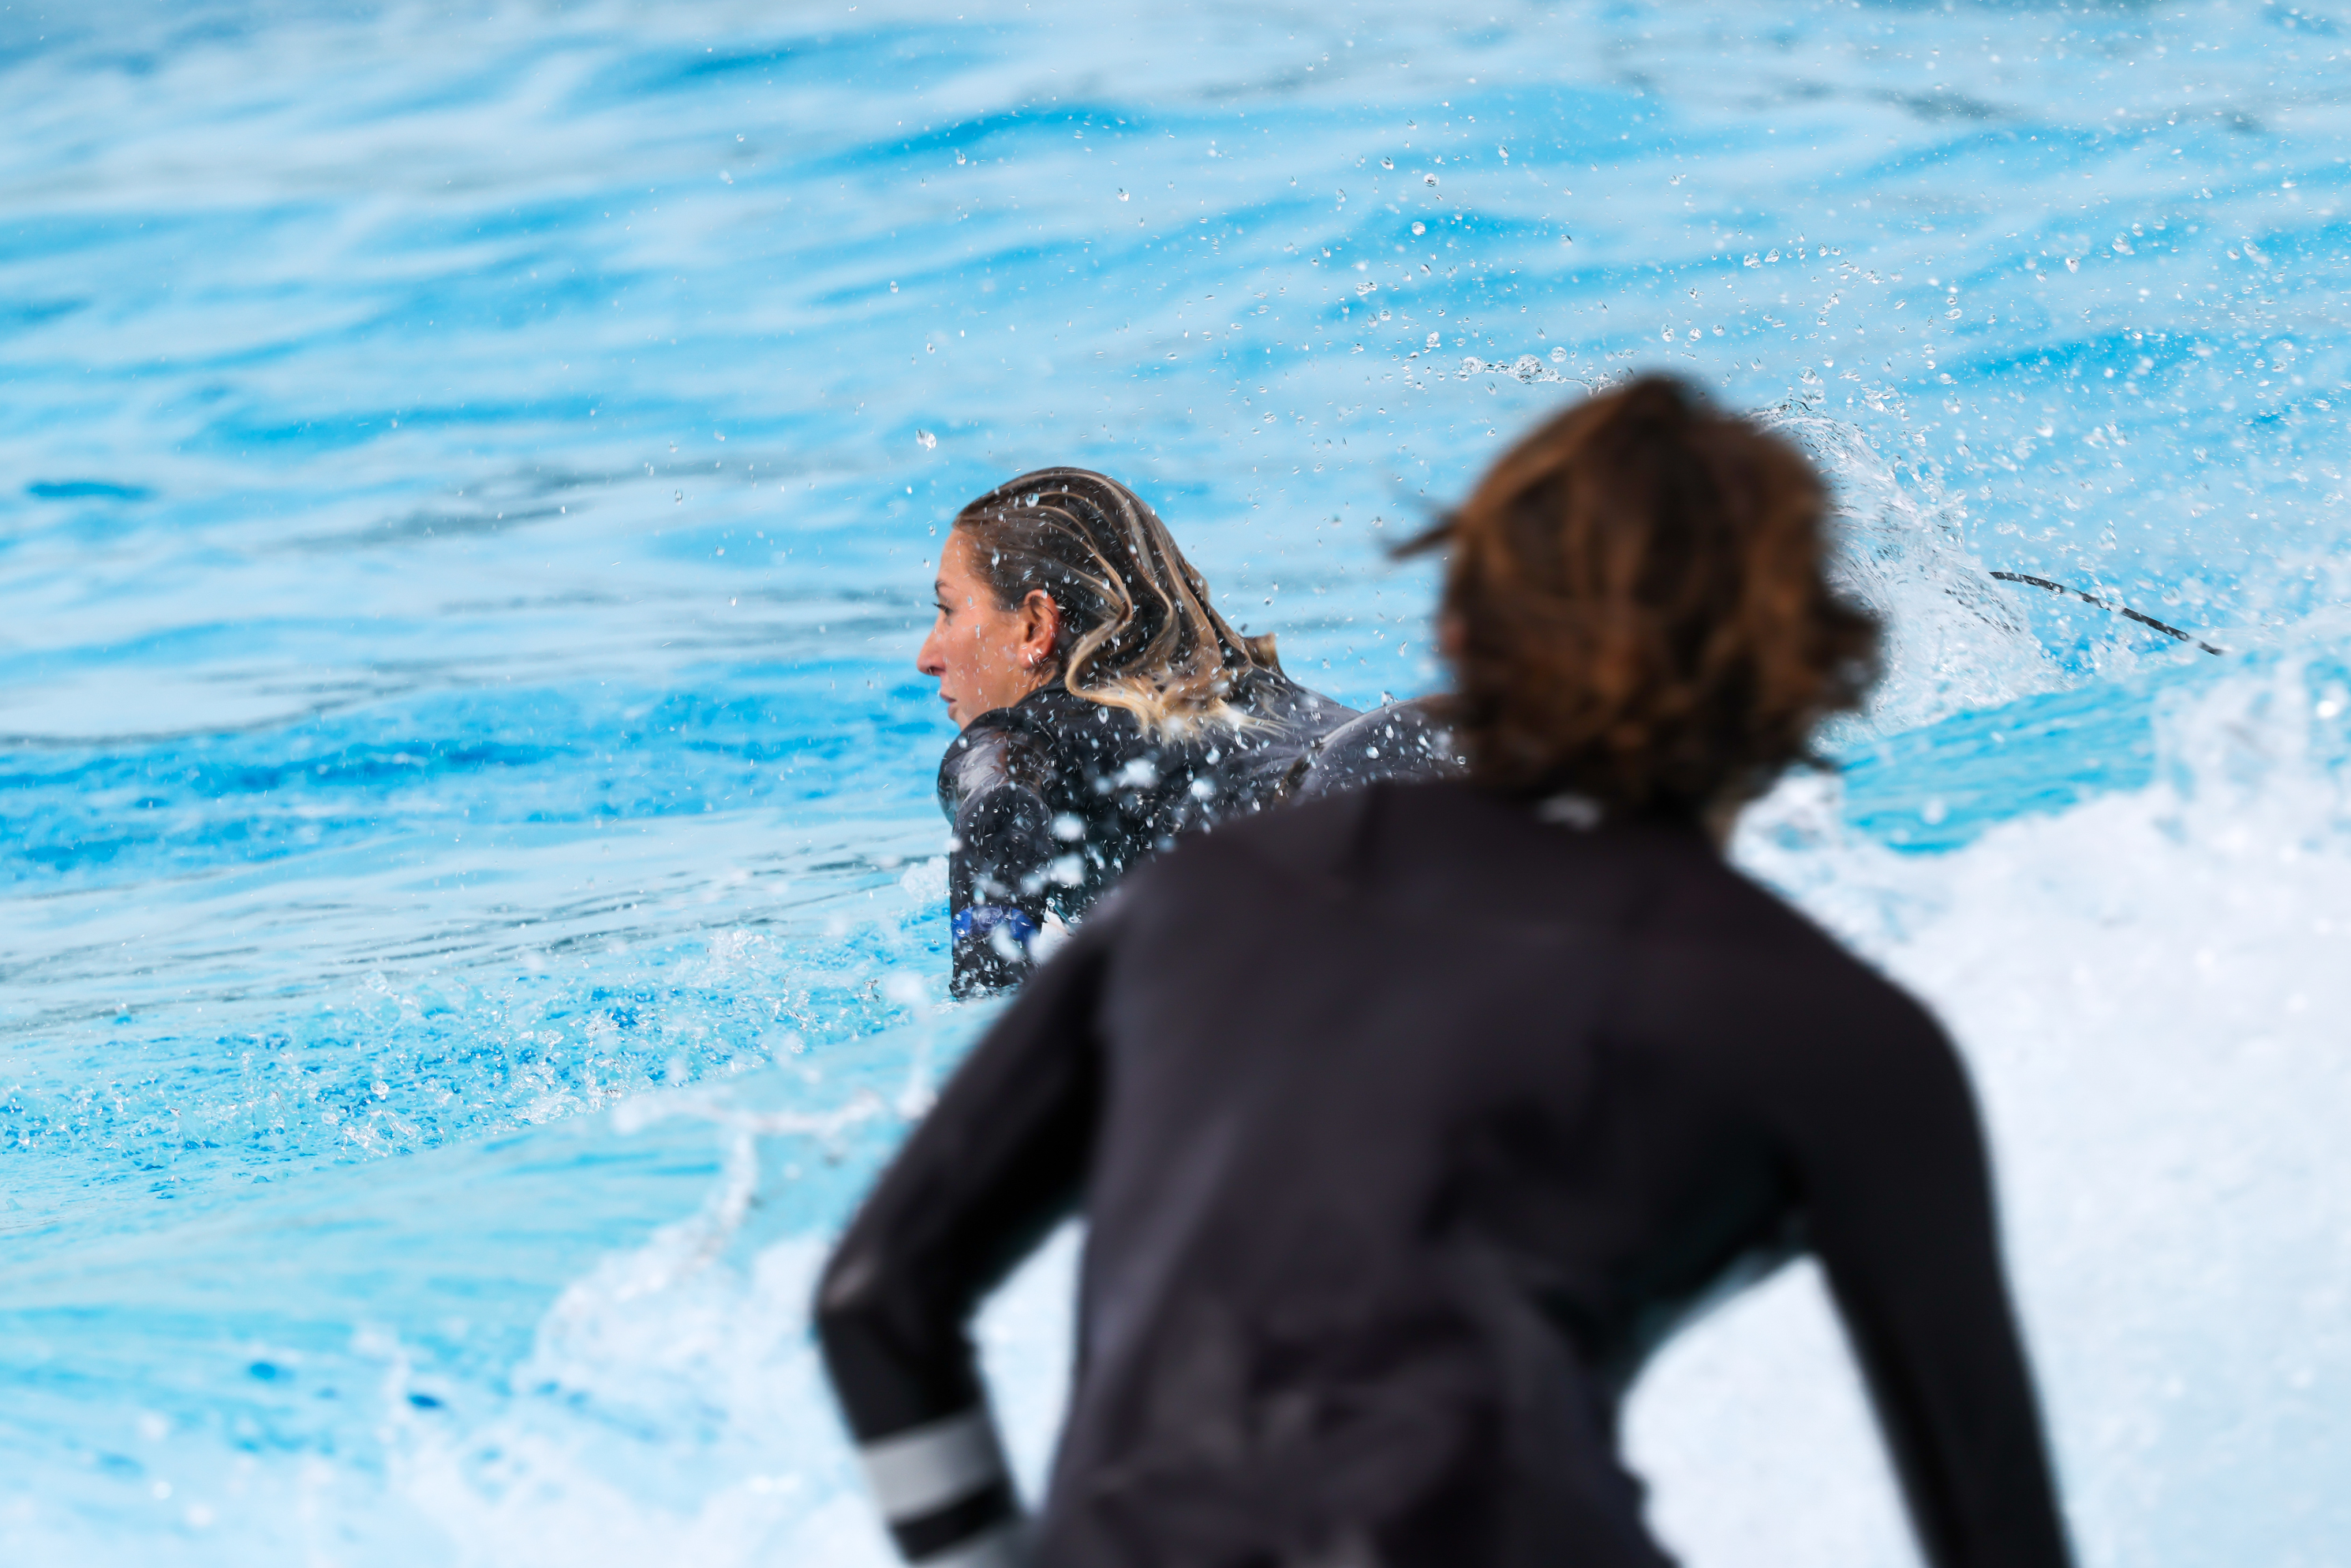 Dos surfistas en el agua en el parque de olas.